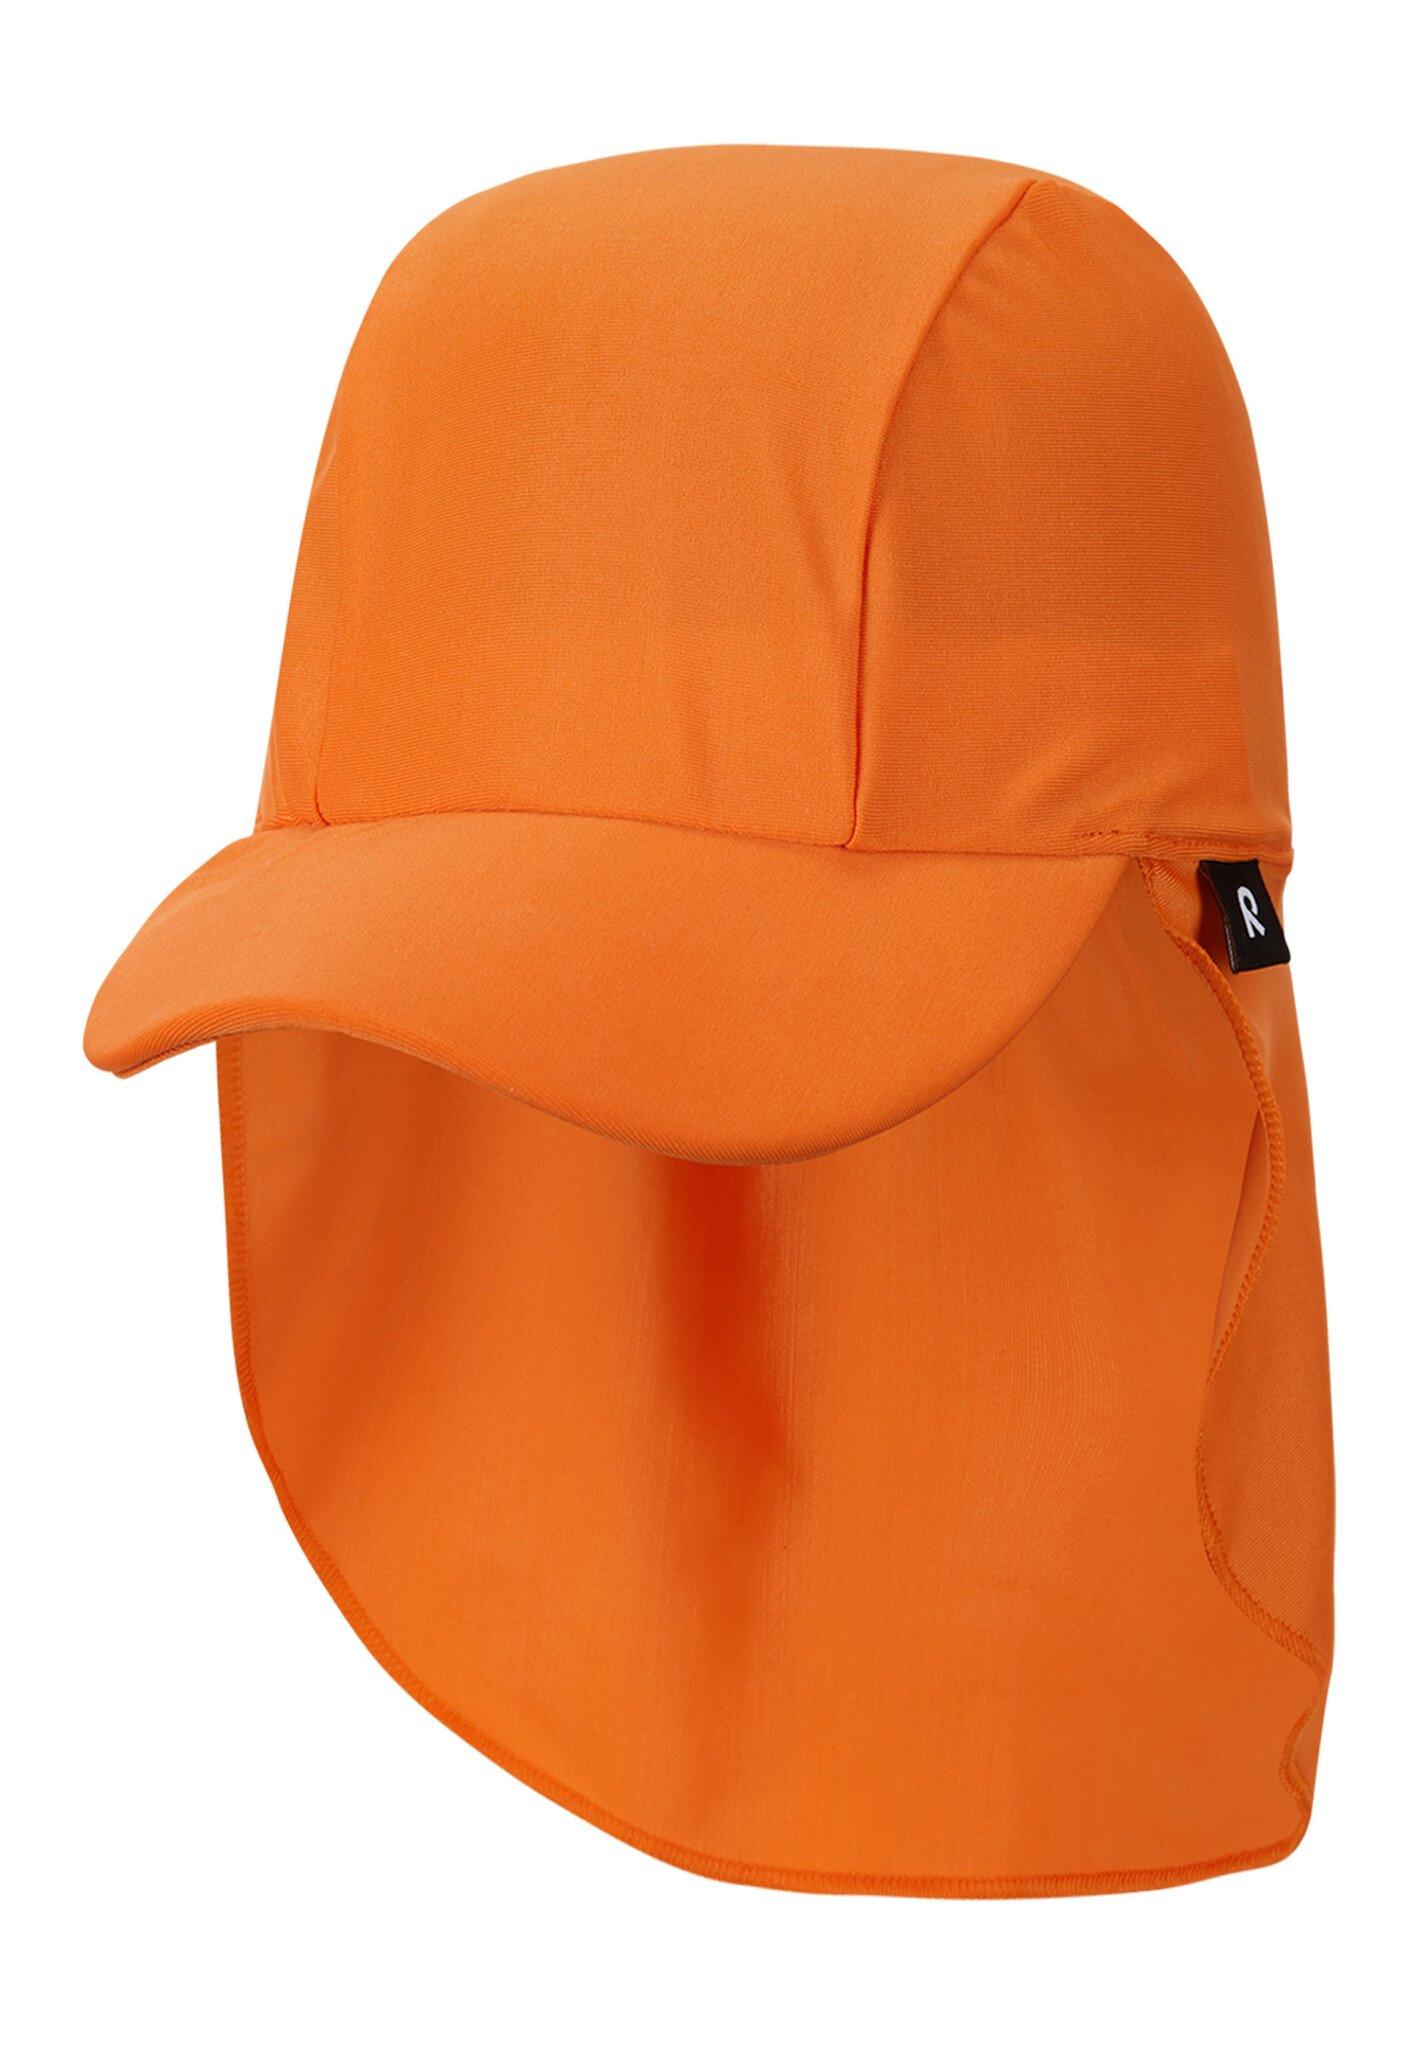 Kinder Sonnenschutz Hut Kilpikonna Orange Jungen Orange 44/46 von Reima